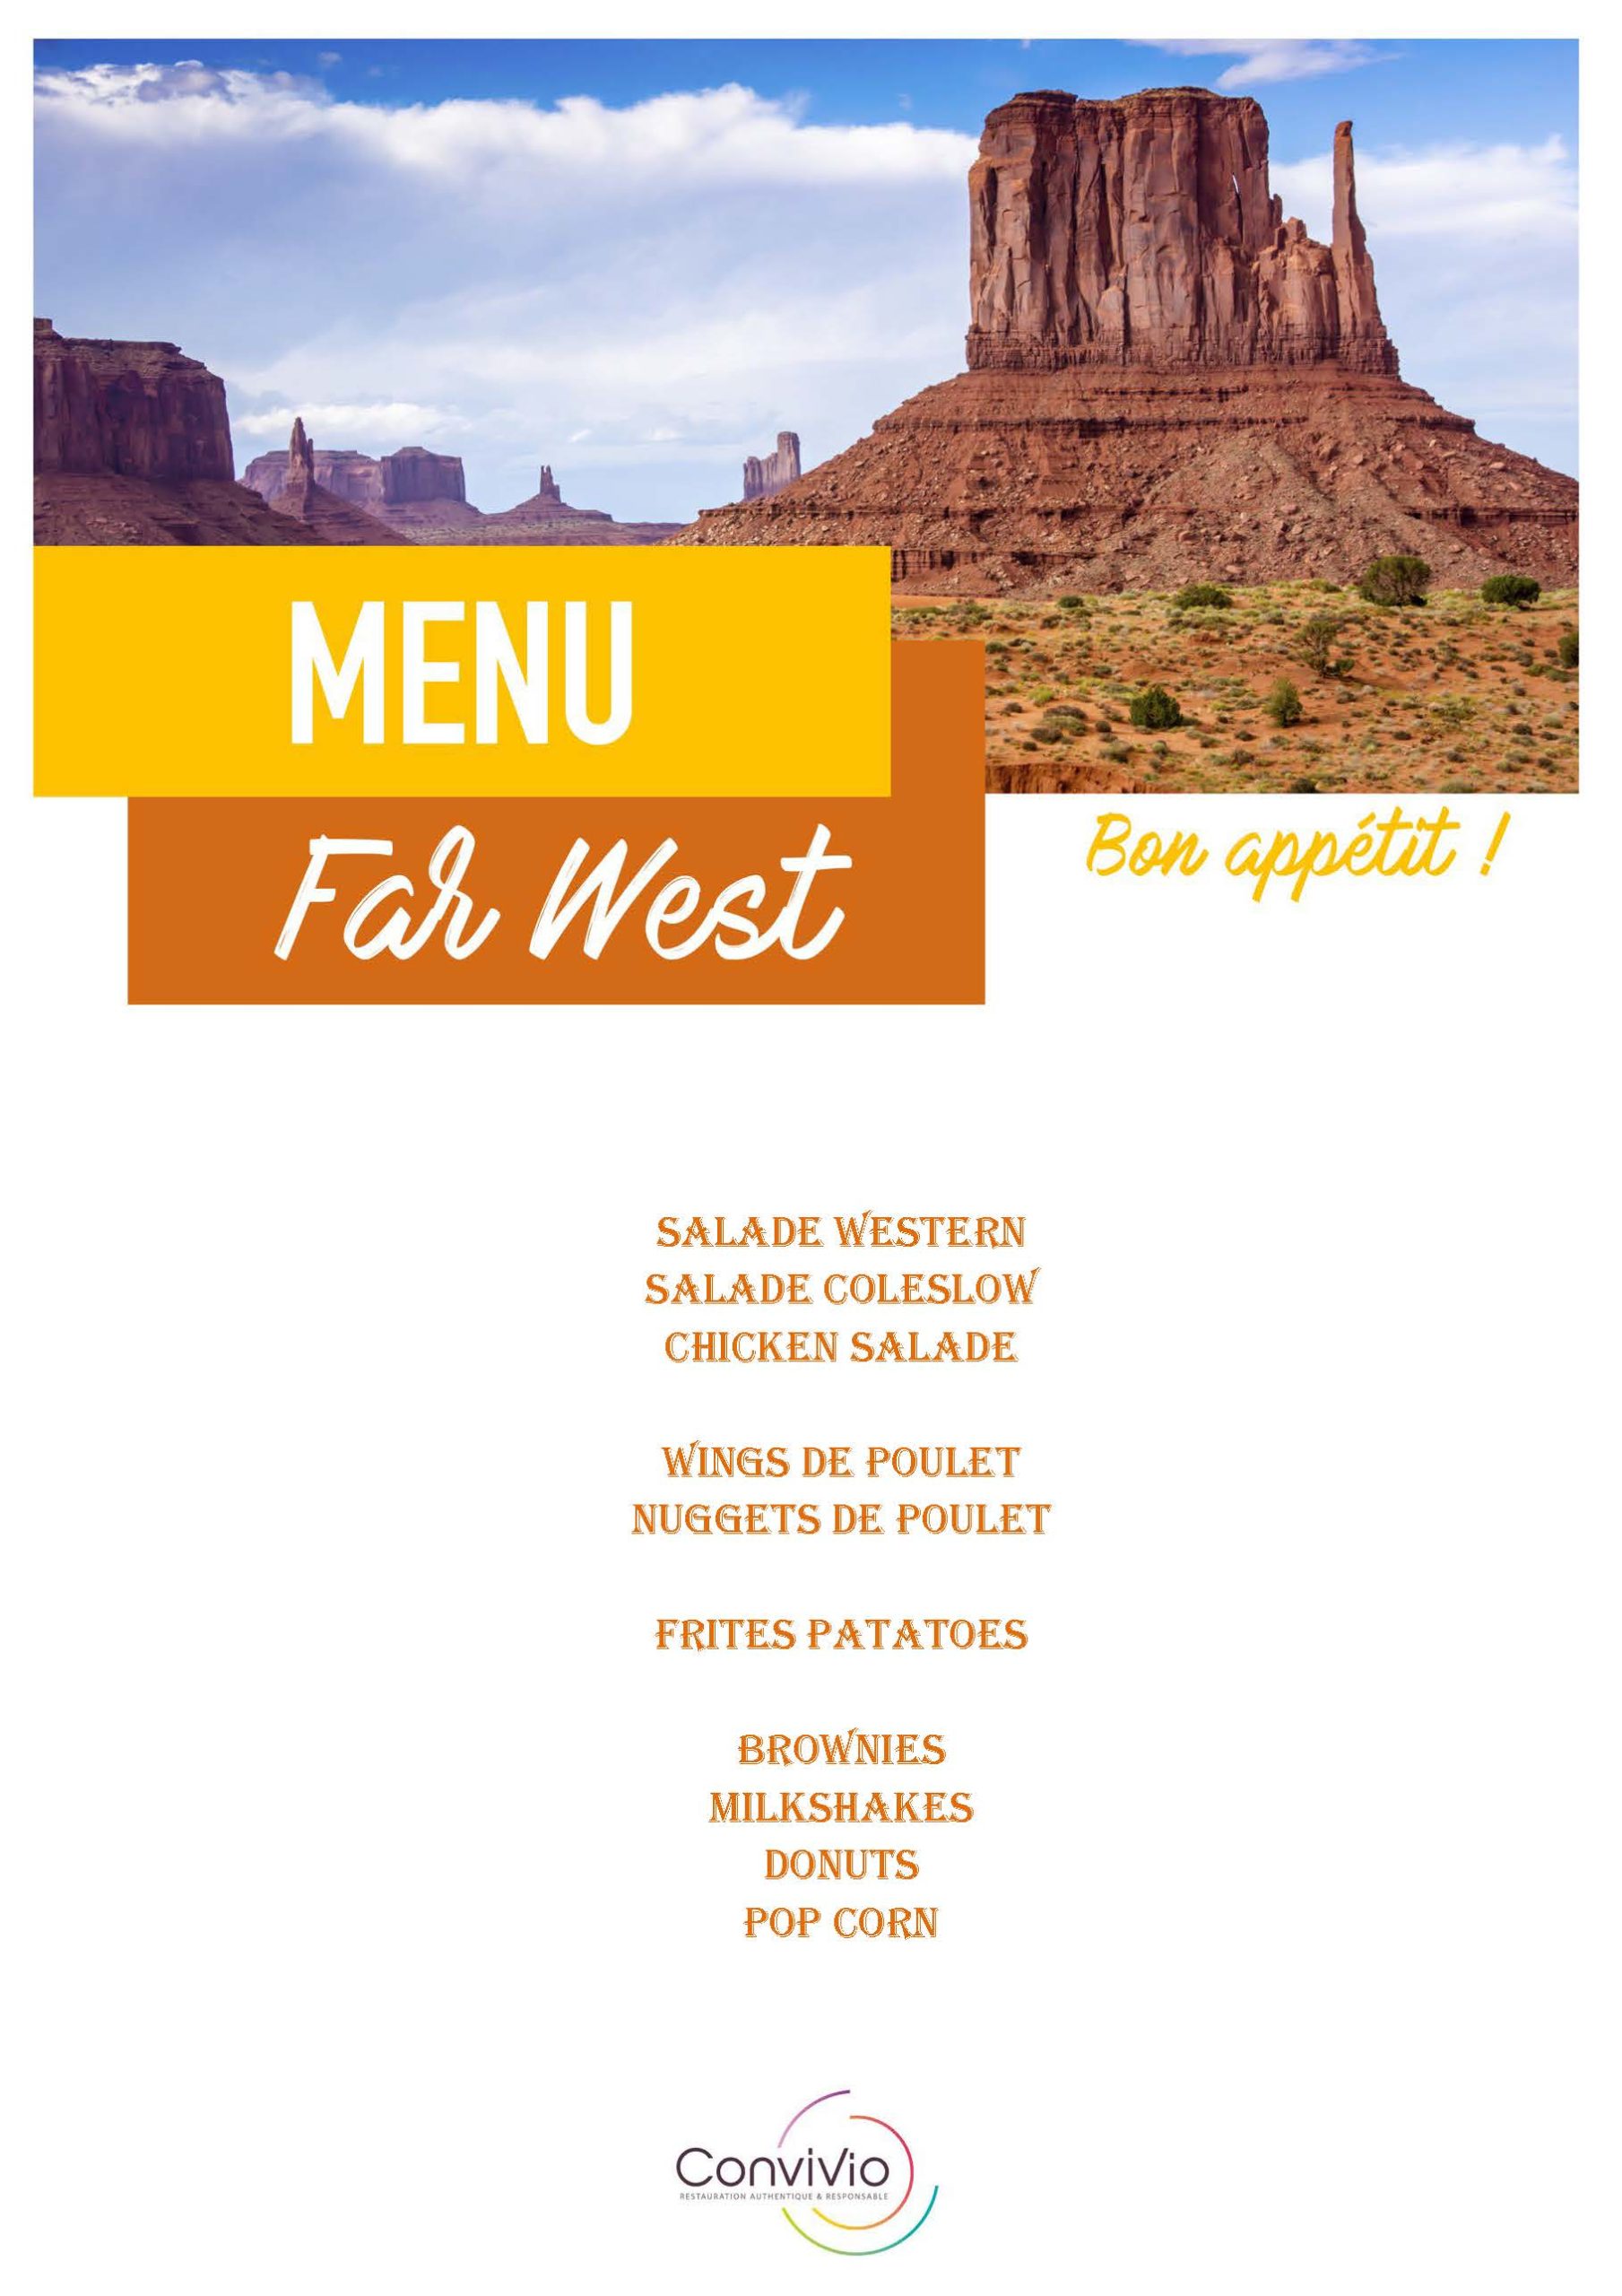 menu "Far West"